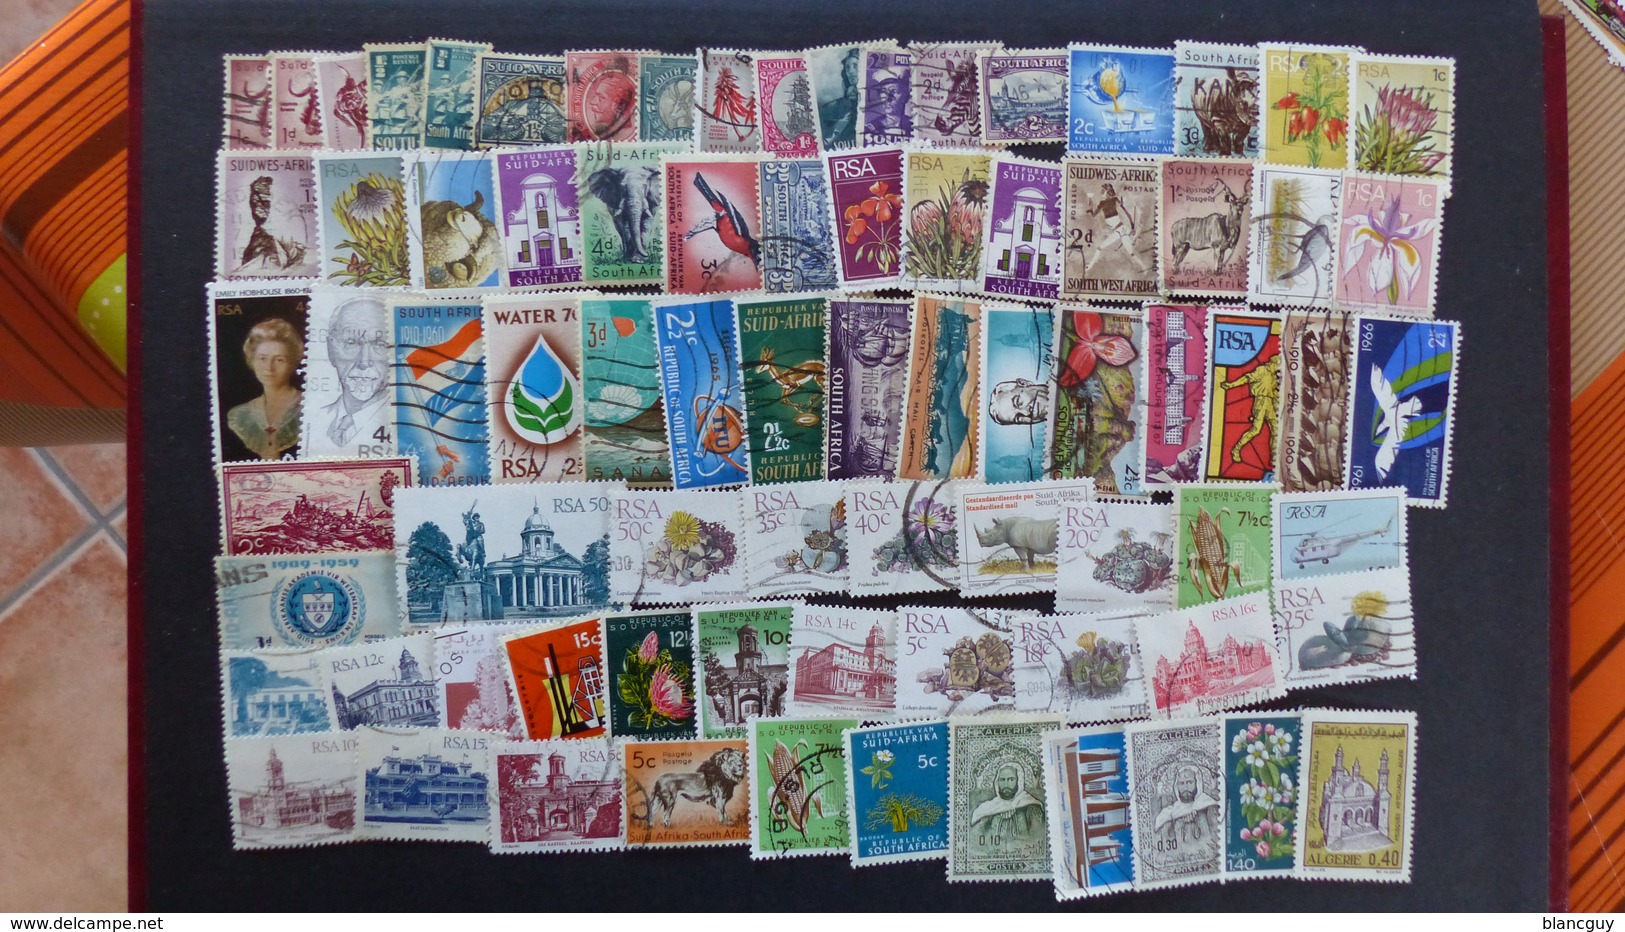 Vrac de 3100 timbres oblitérés du monde, quelques neufs, tous différents